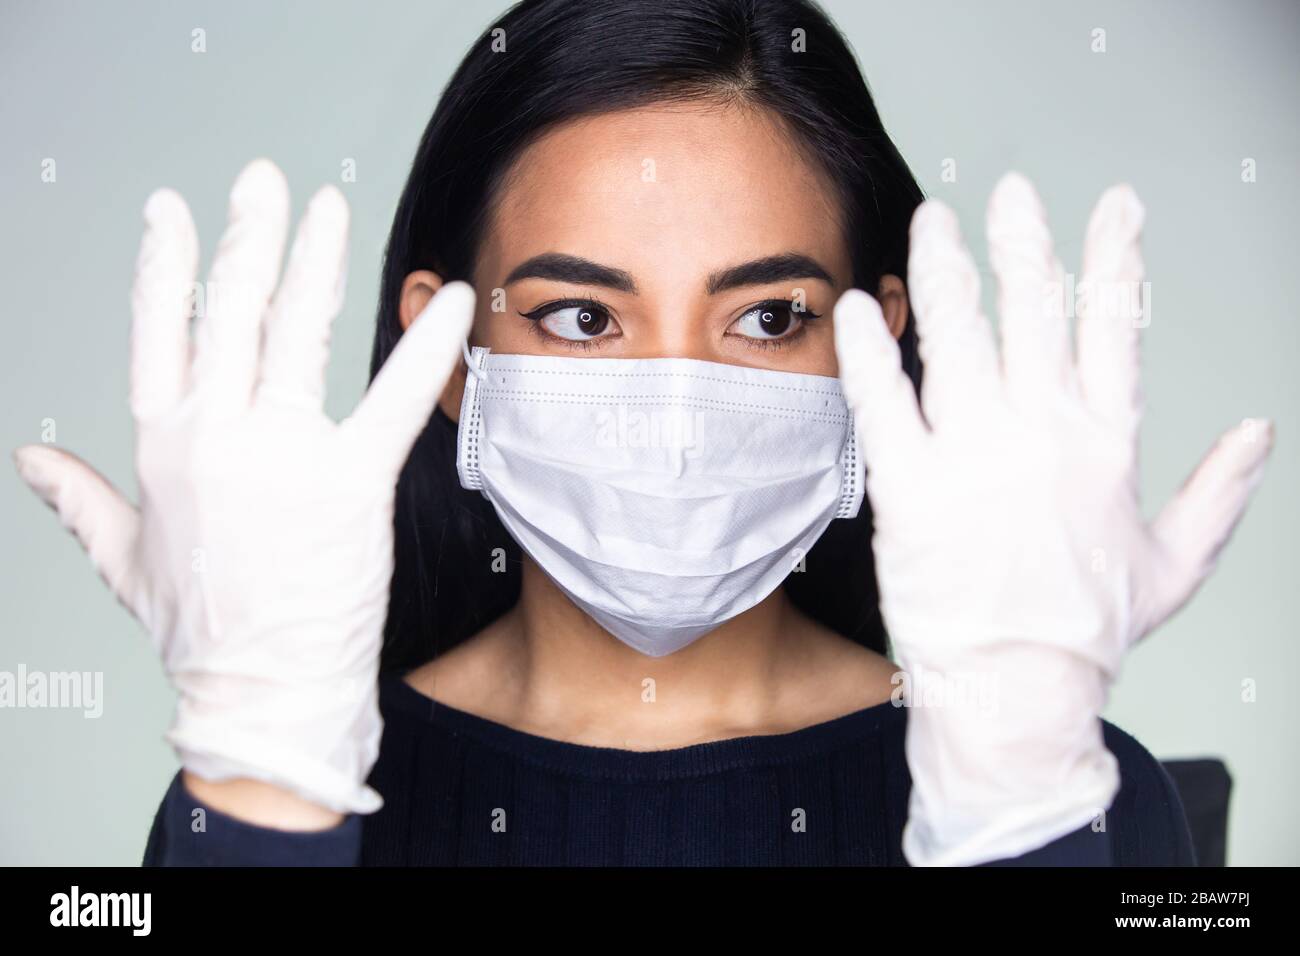 Coronavirus-Ausbruch: Eine asiatische Frau, die medizinische Gummihandschuhe und eine Einwegmaske ansetzt, um ansteckende Viren zu vermeiden. Stockfoto